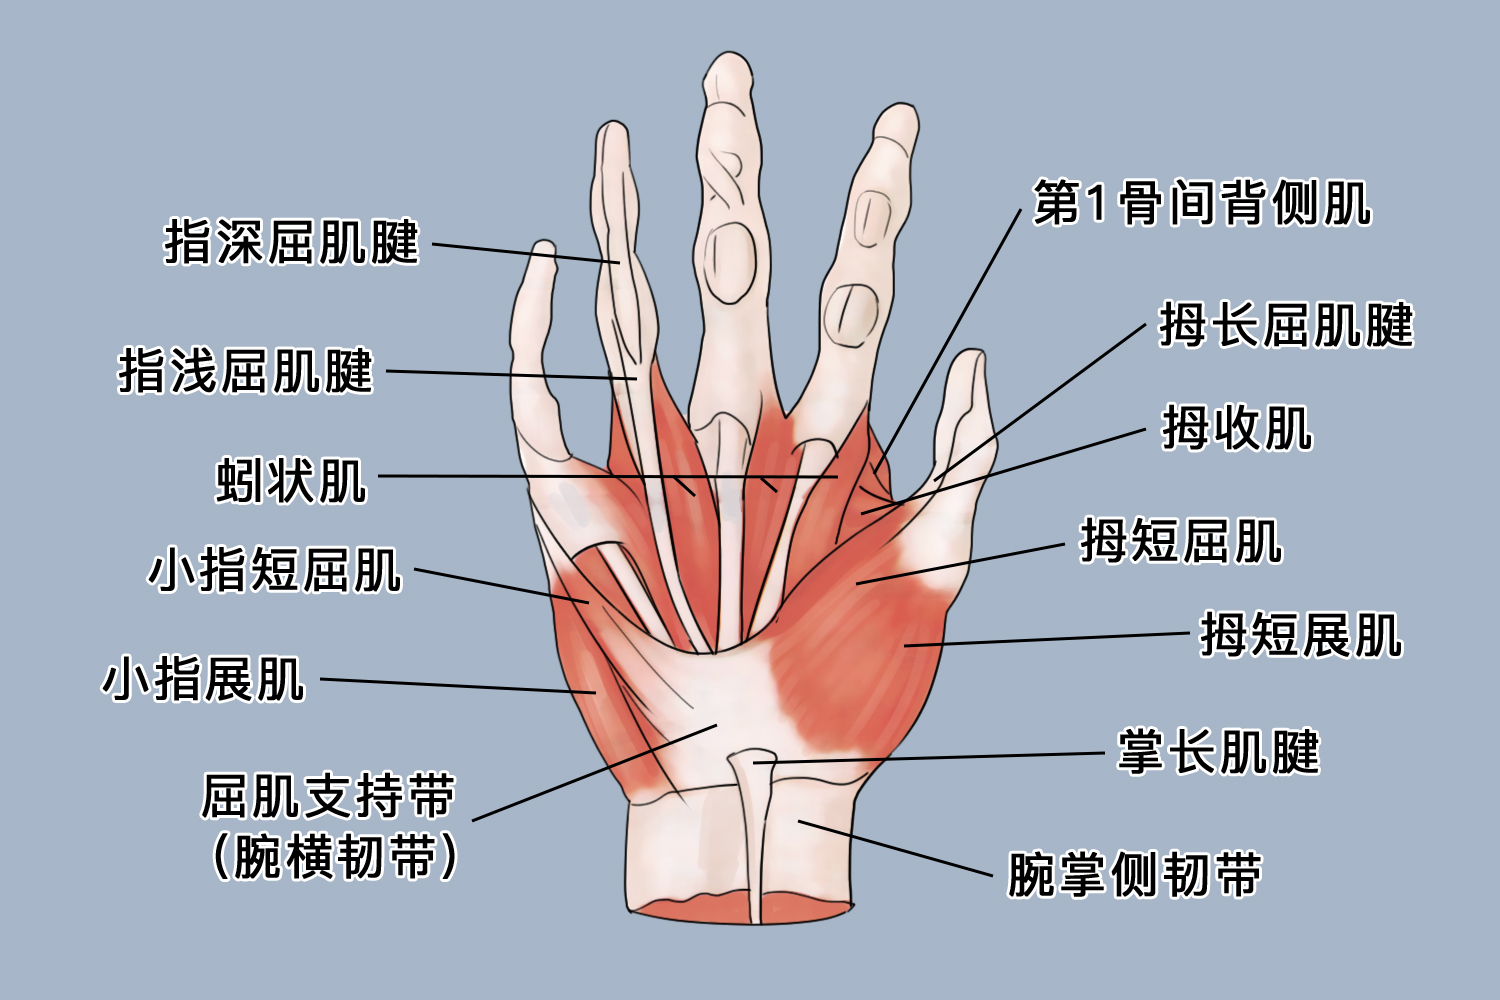 情况机体出现类风湿性关节炎,腱鞘炎等疾病时,可导致手指解剖结构异常